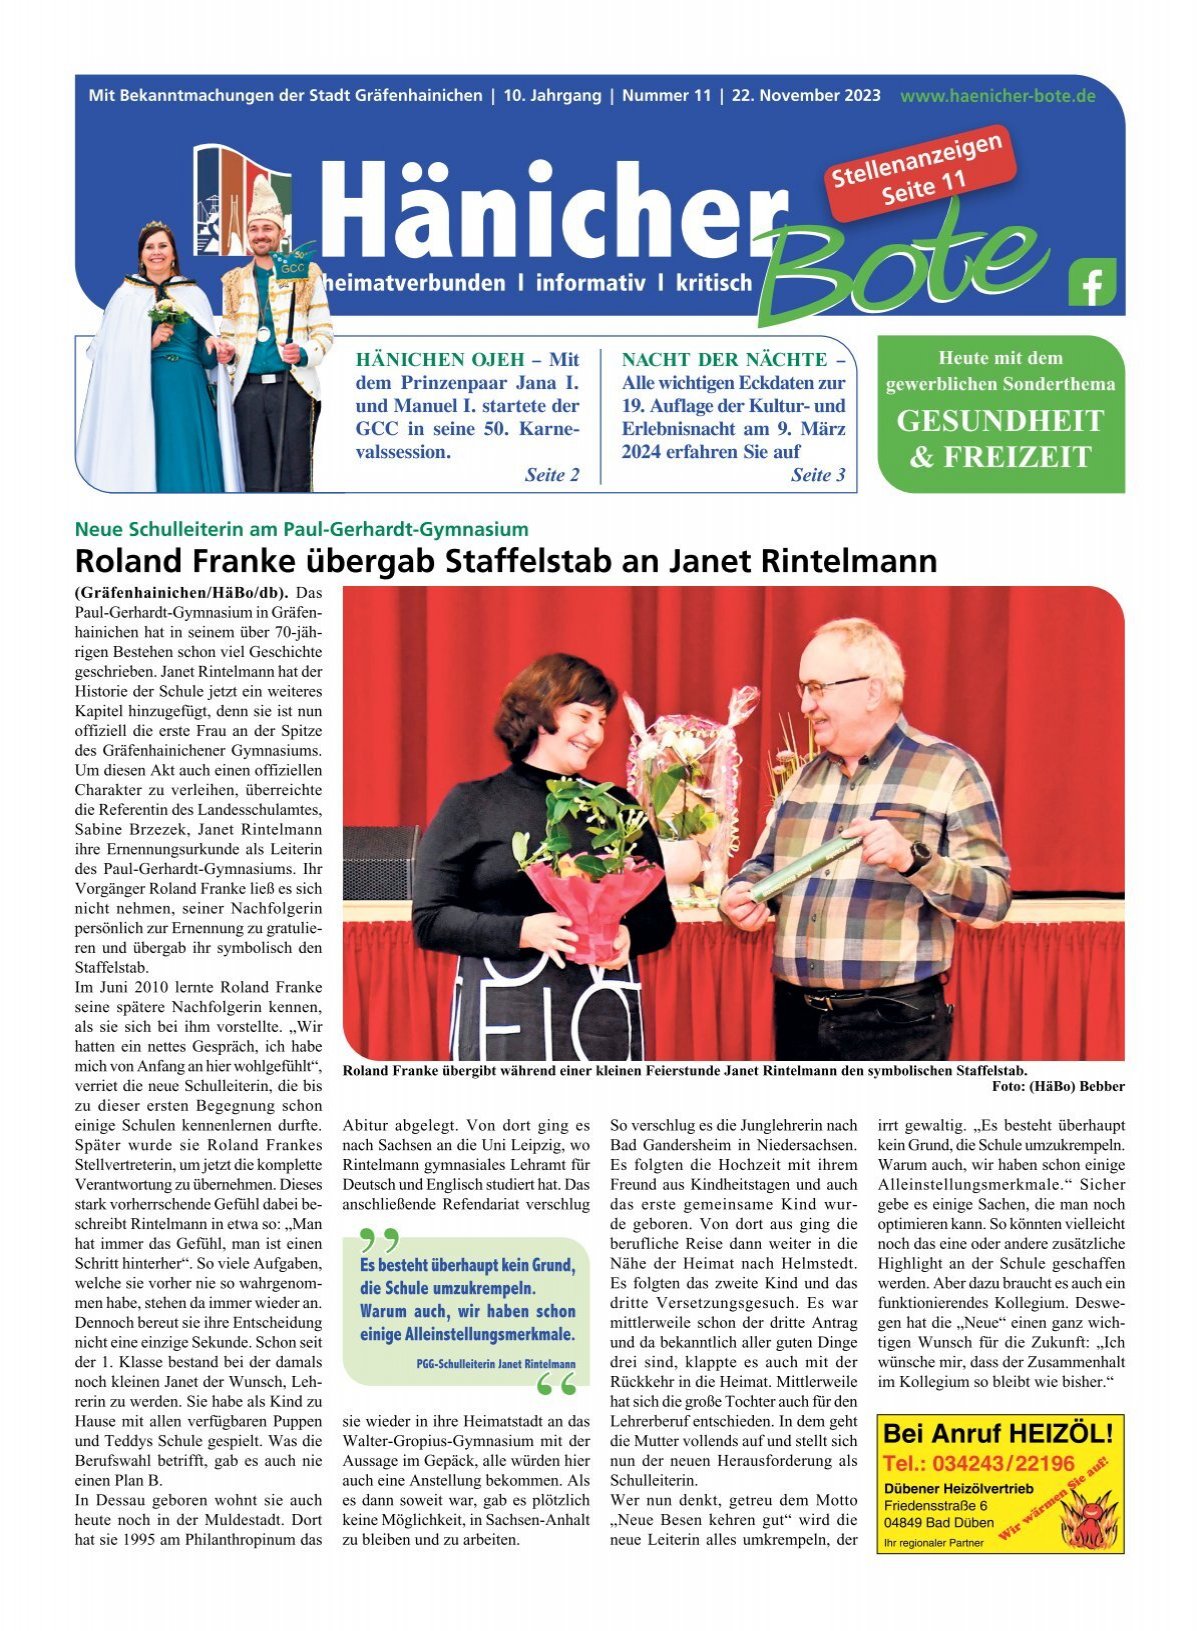 Hänicher Bote  November-Ausgabe 2023